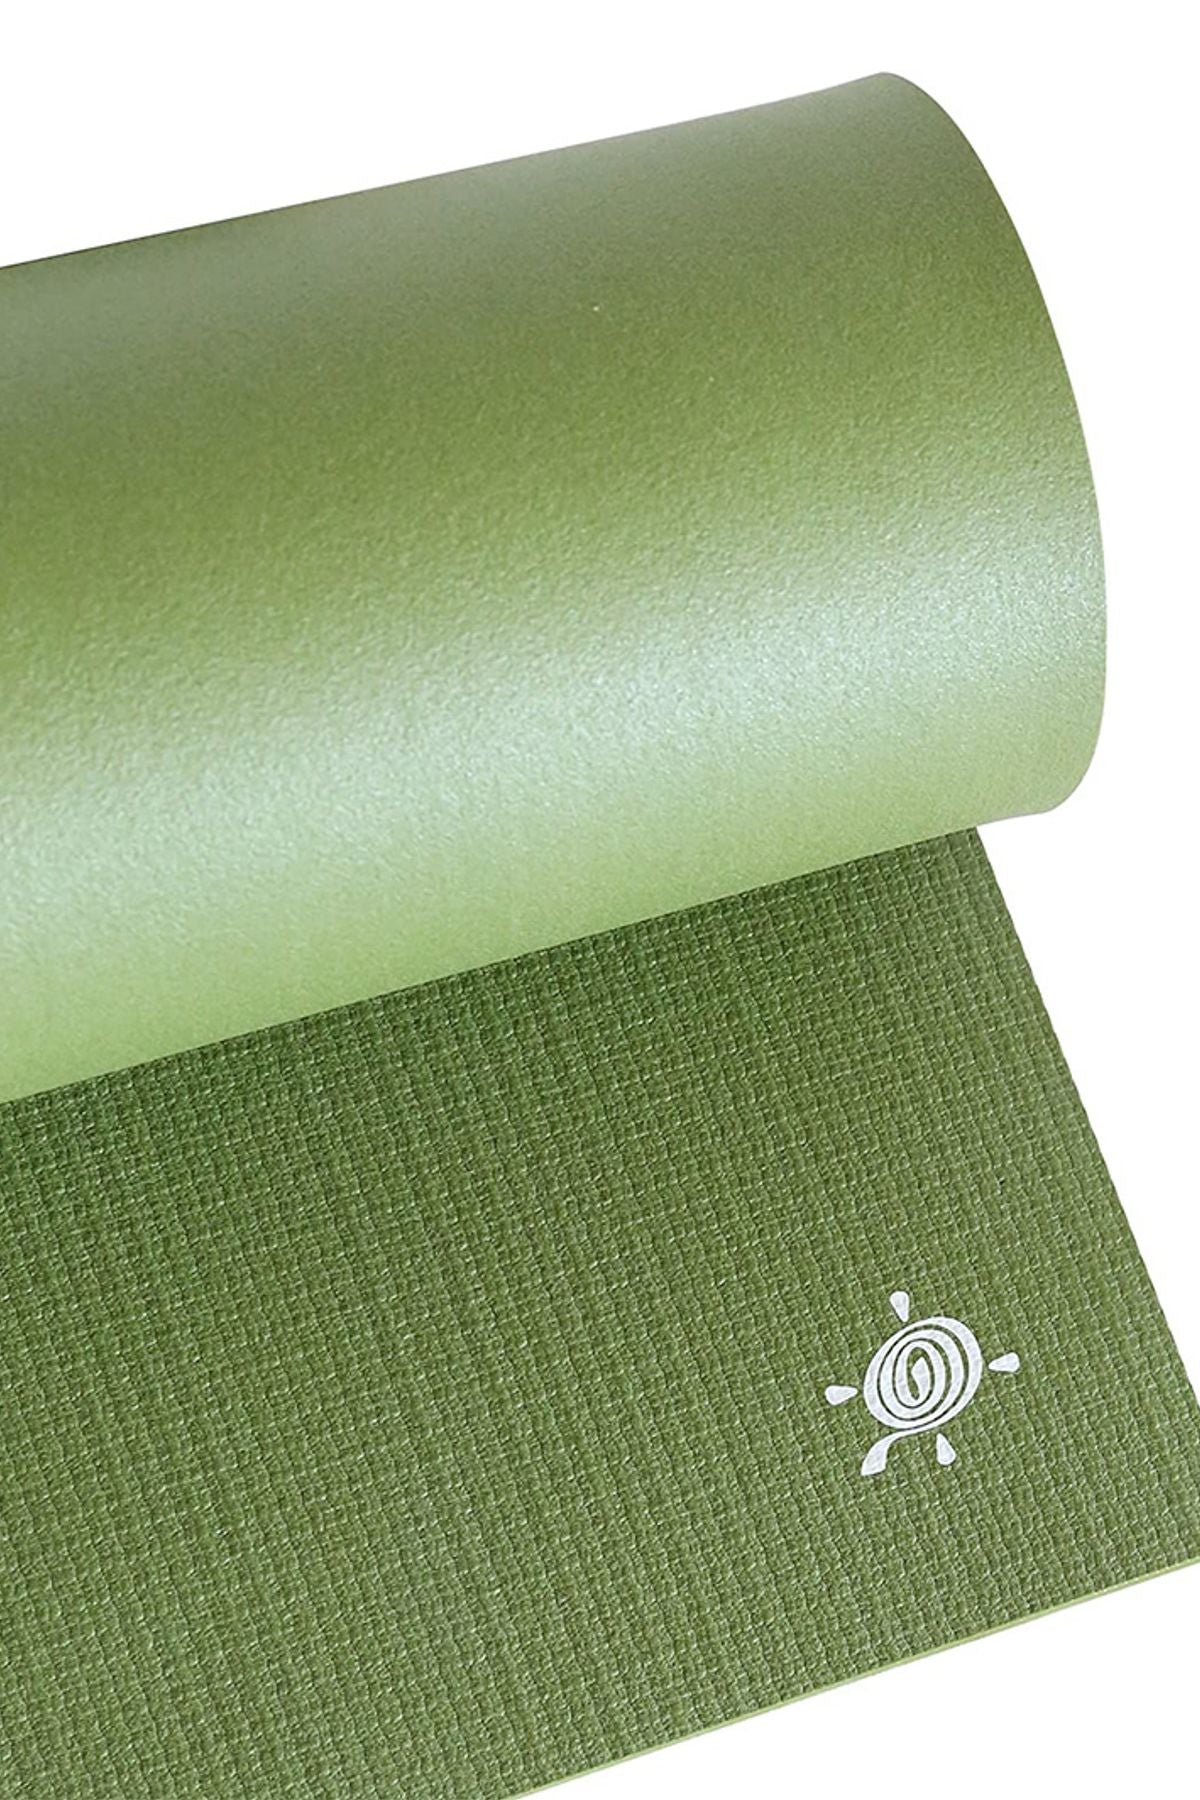 Kurma Lite 4.2 mm Yoga Matı Yeşil